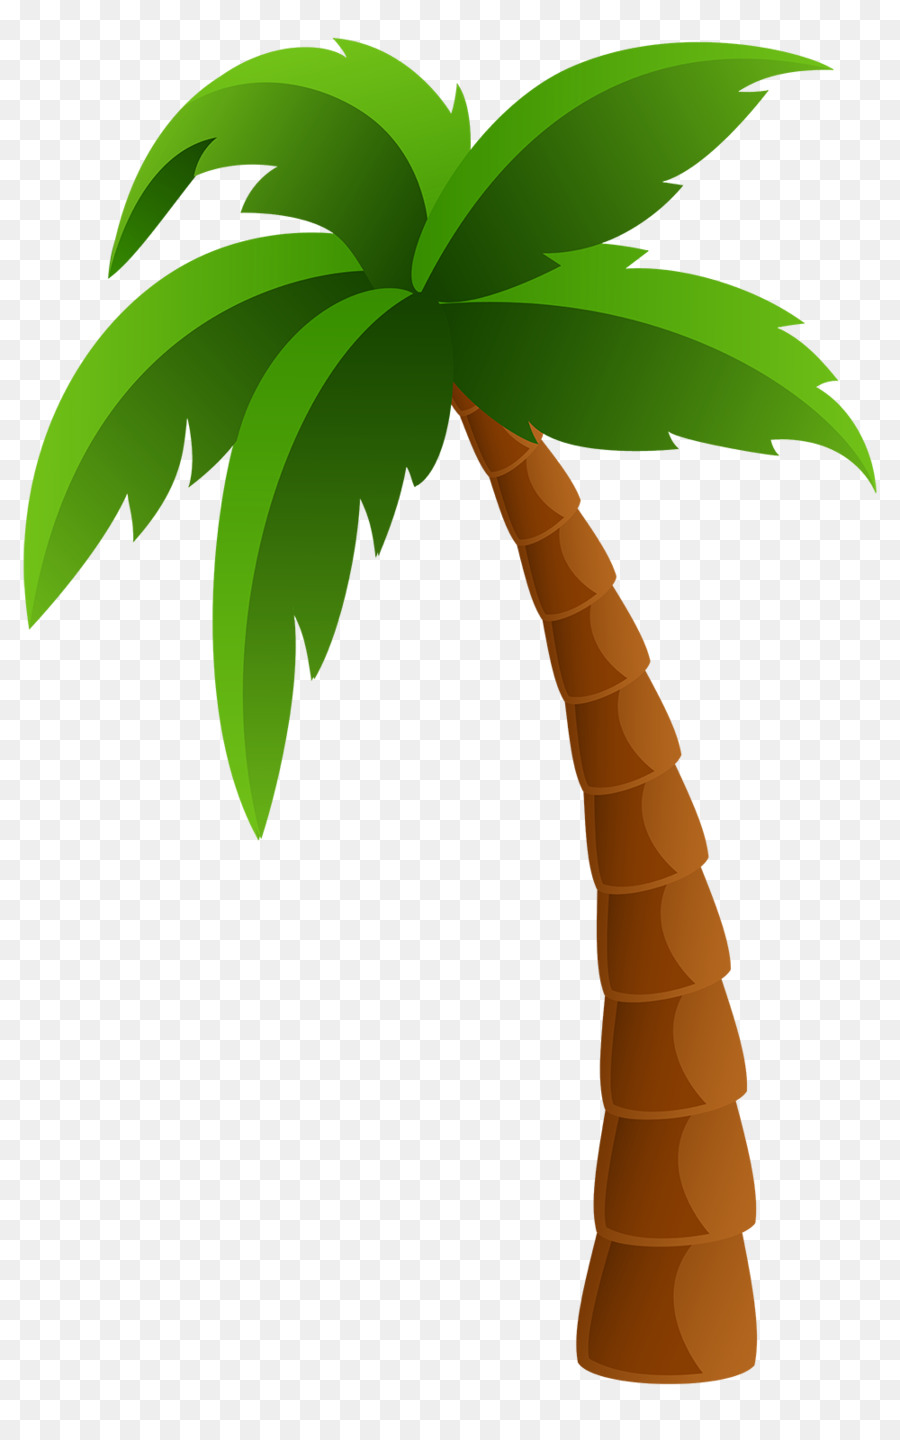 Coconut tree cartoon.